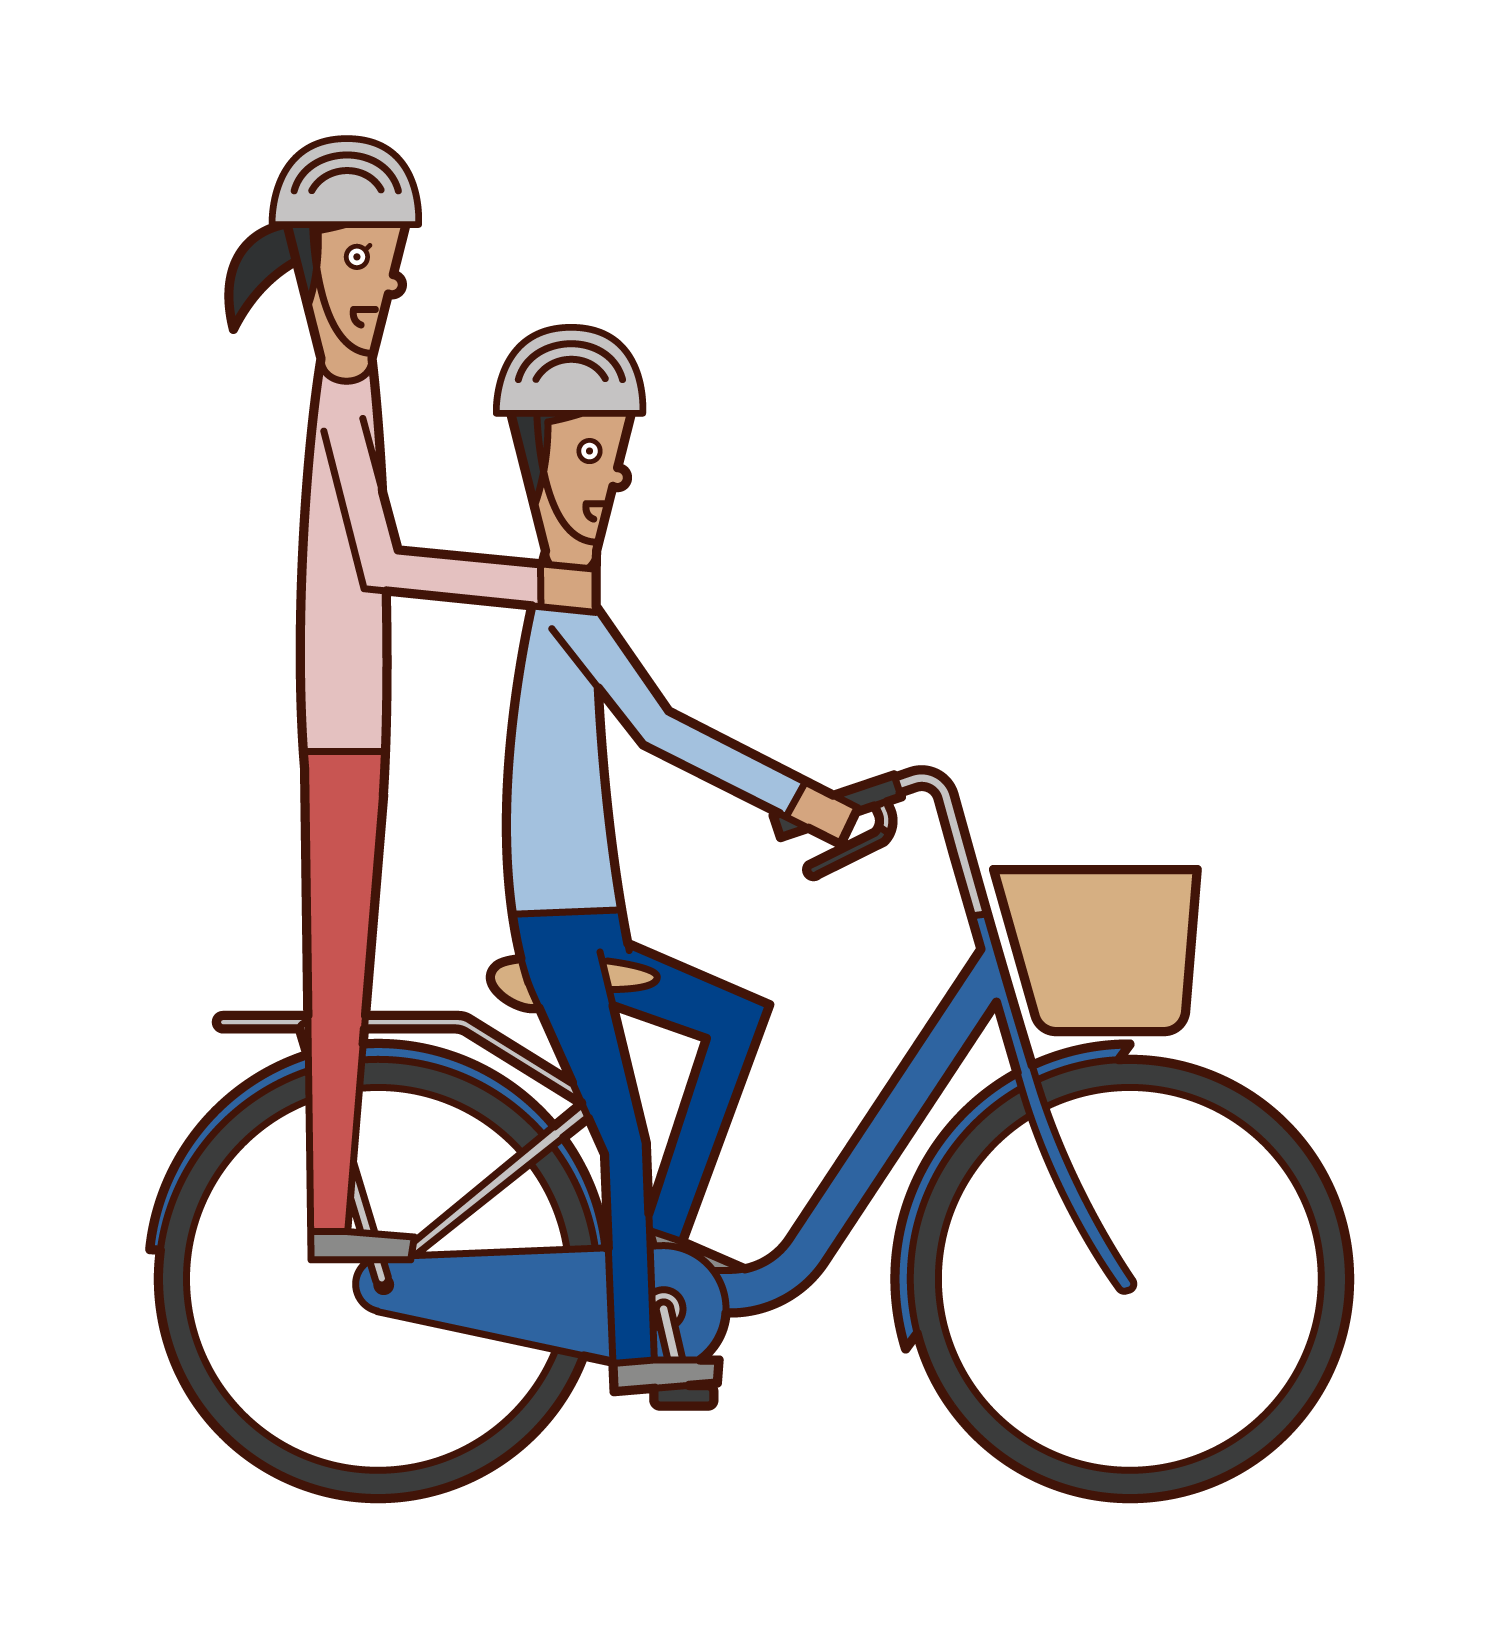 自転車で二人乗りをする人達のイラスト